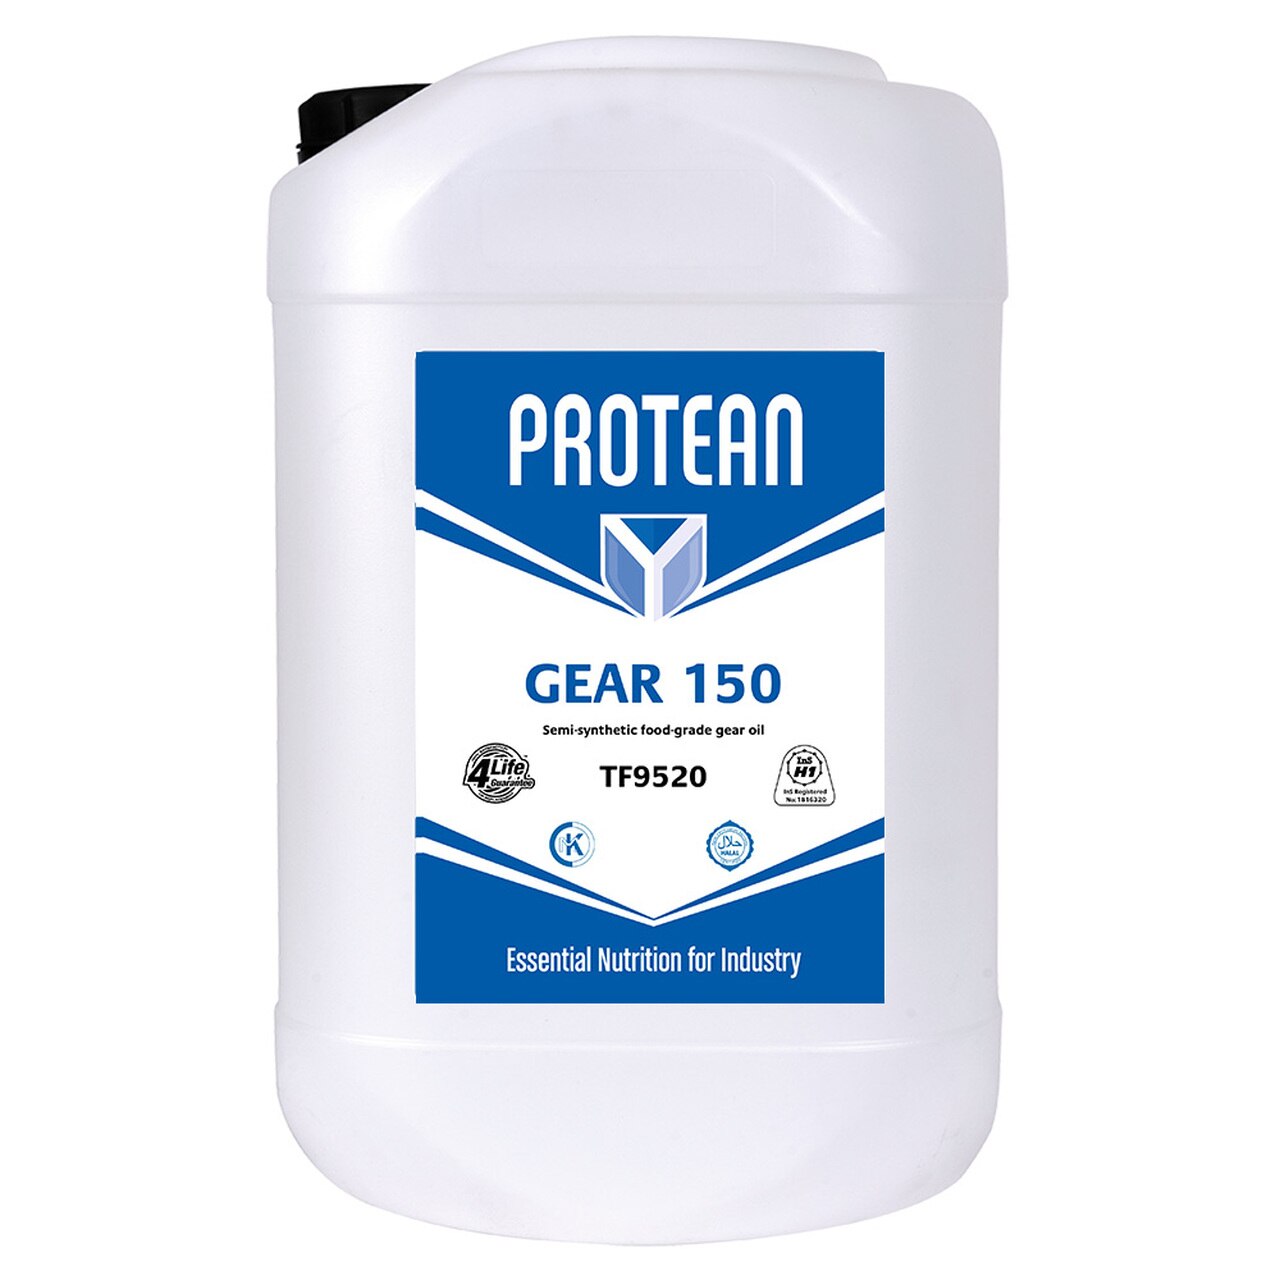 PROTEAN Gear 150 20L - TF9520